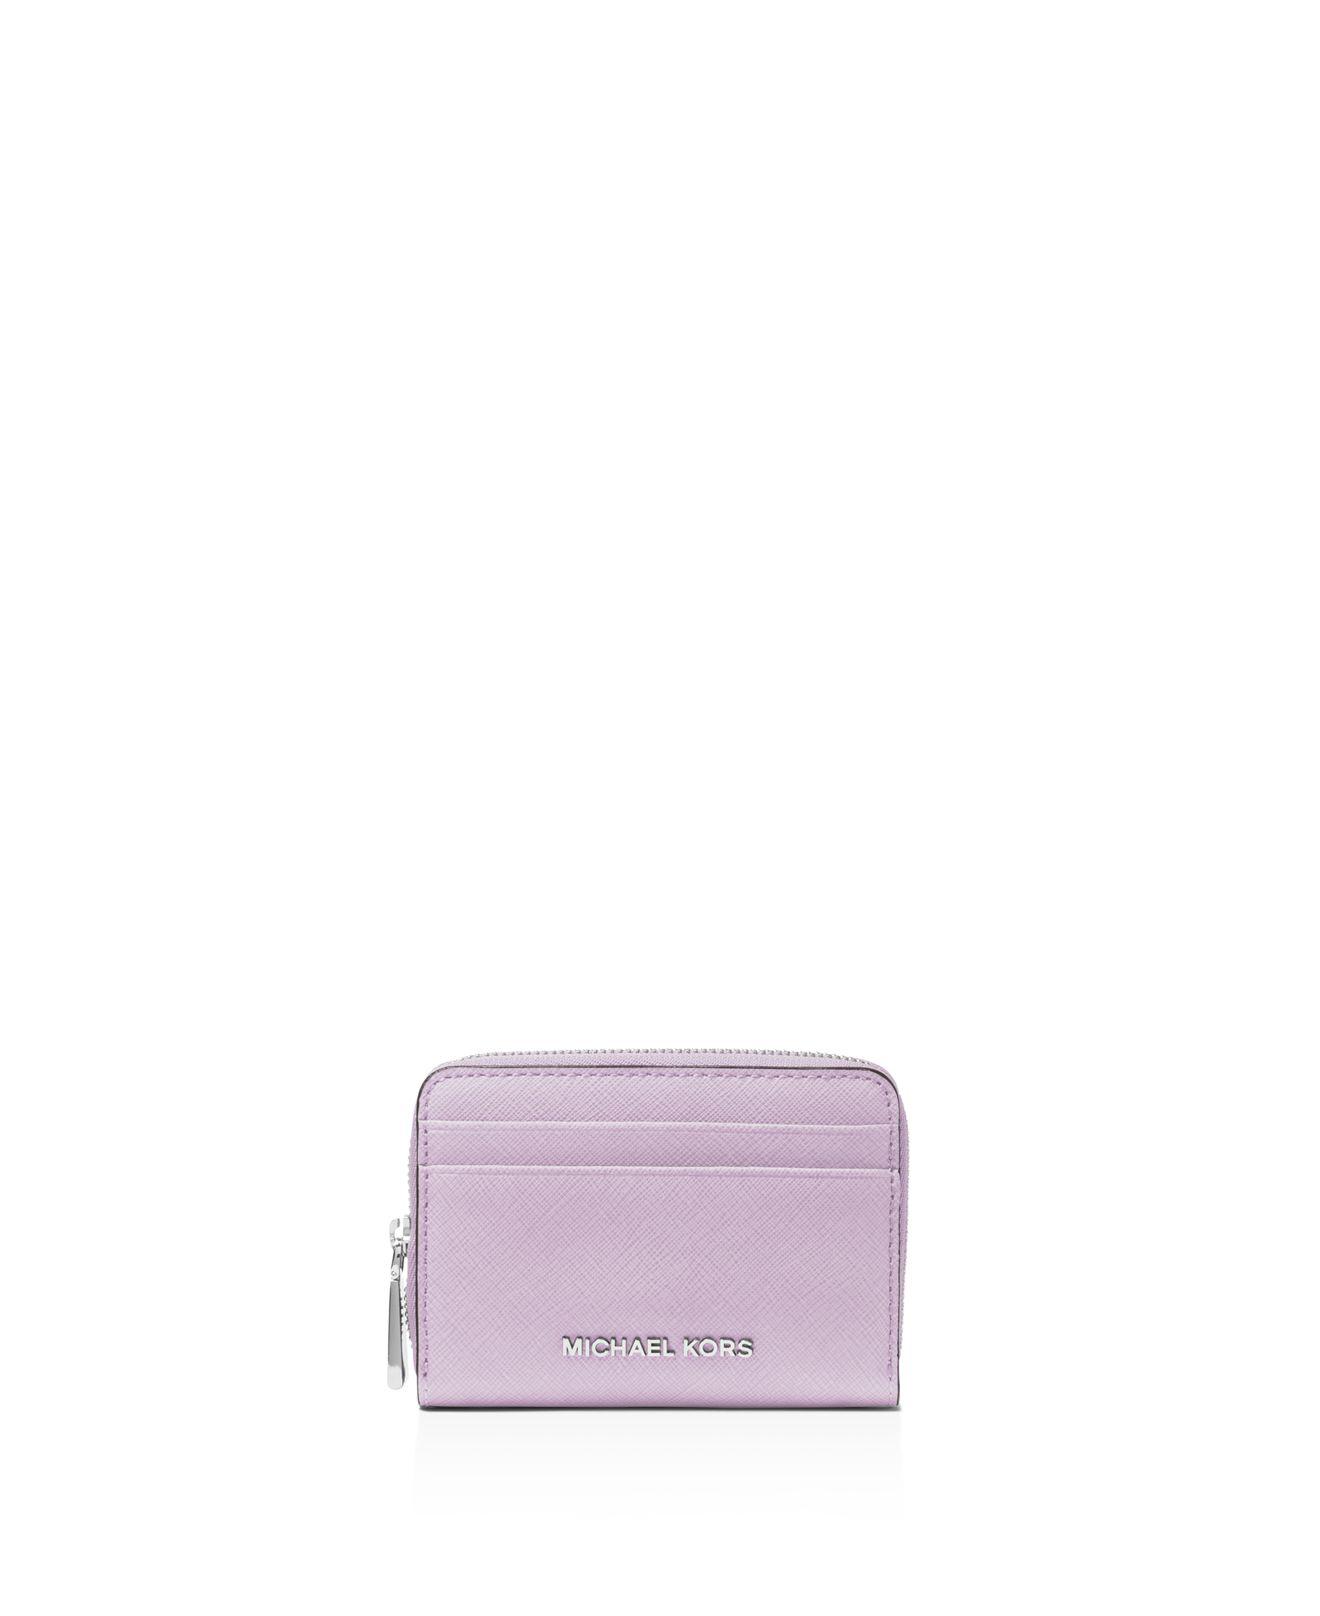 MK purple wallet